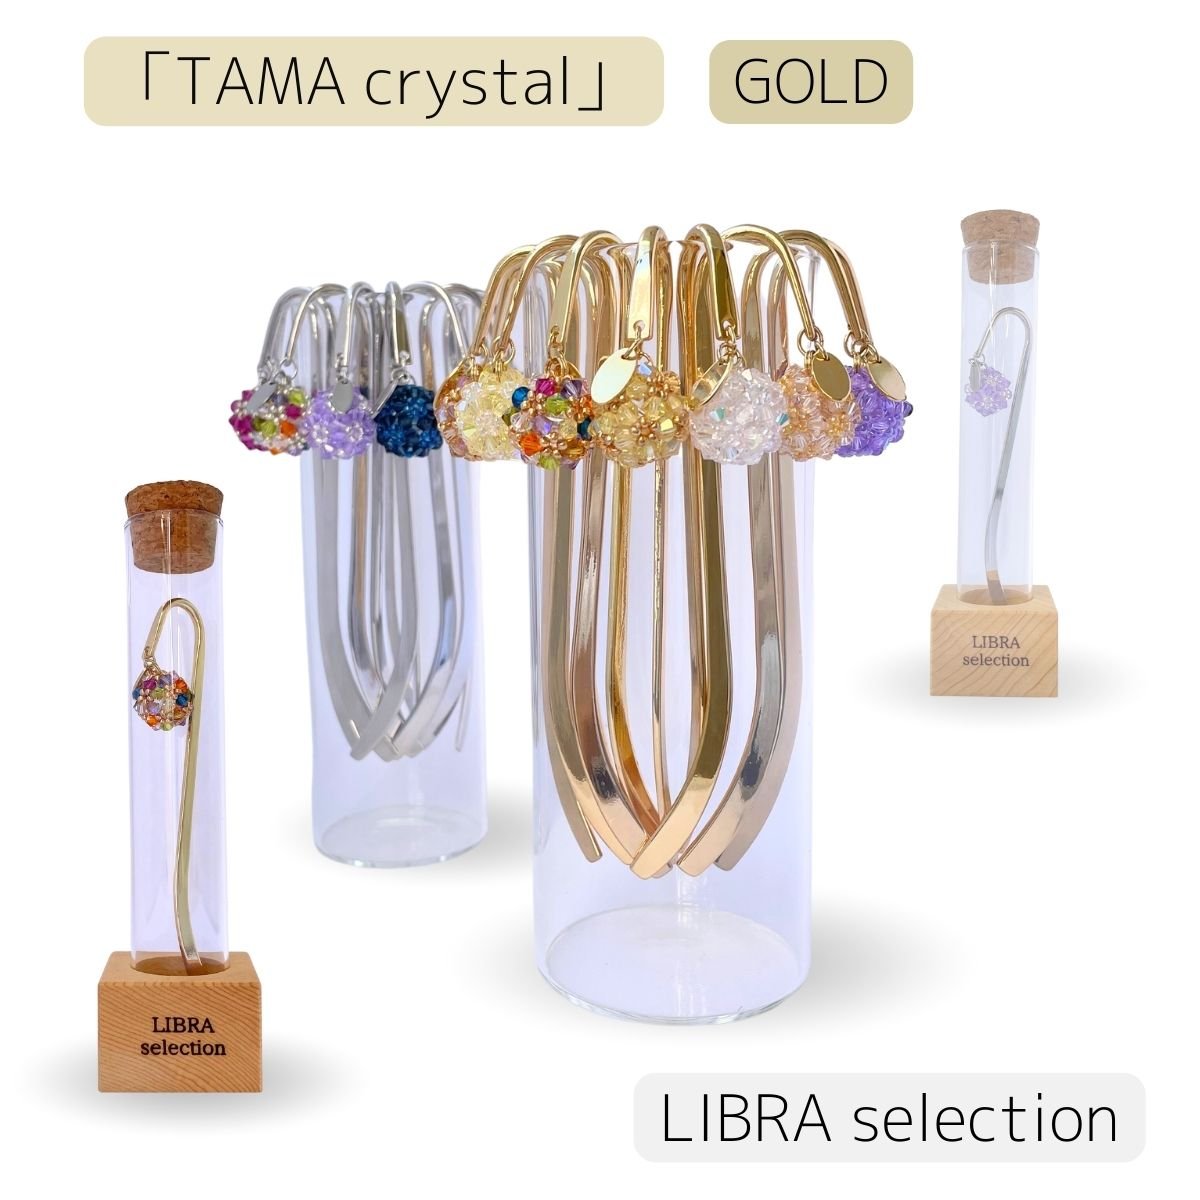 「TAMA  crystal」台座付き/ゴールド/高級クリスタル・おしゃれブックマーカー/優れた浄化と邪気払い・願いを構える力